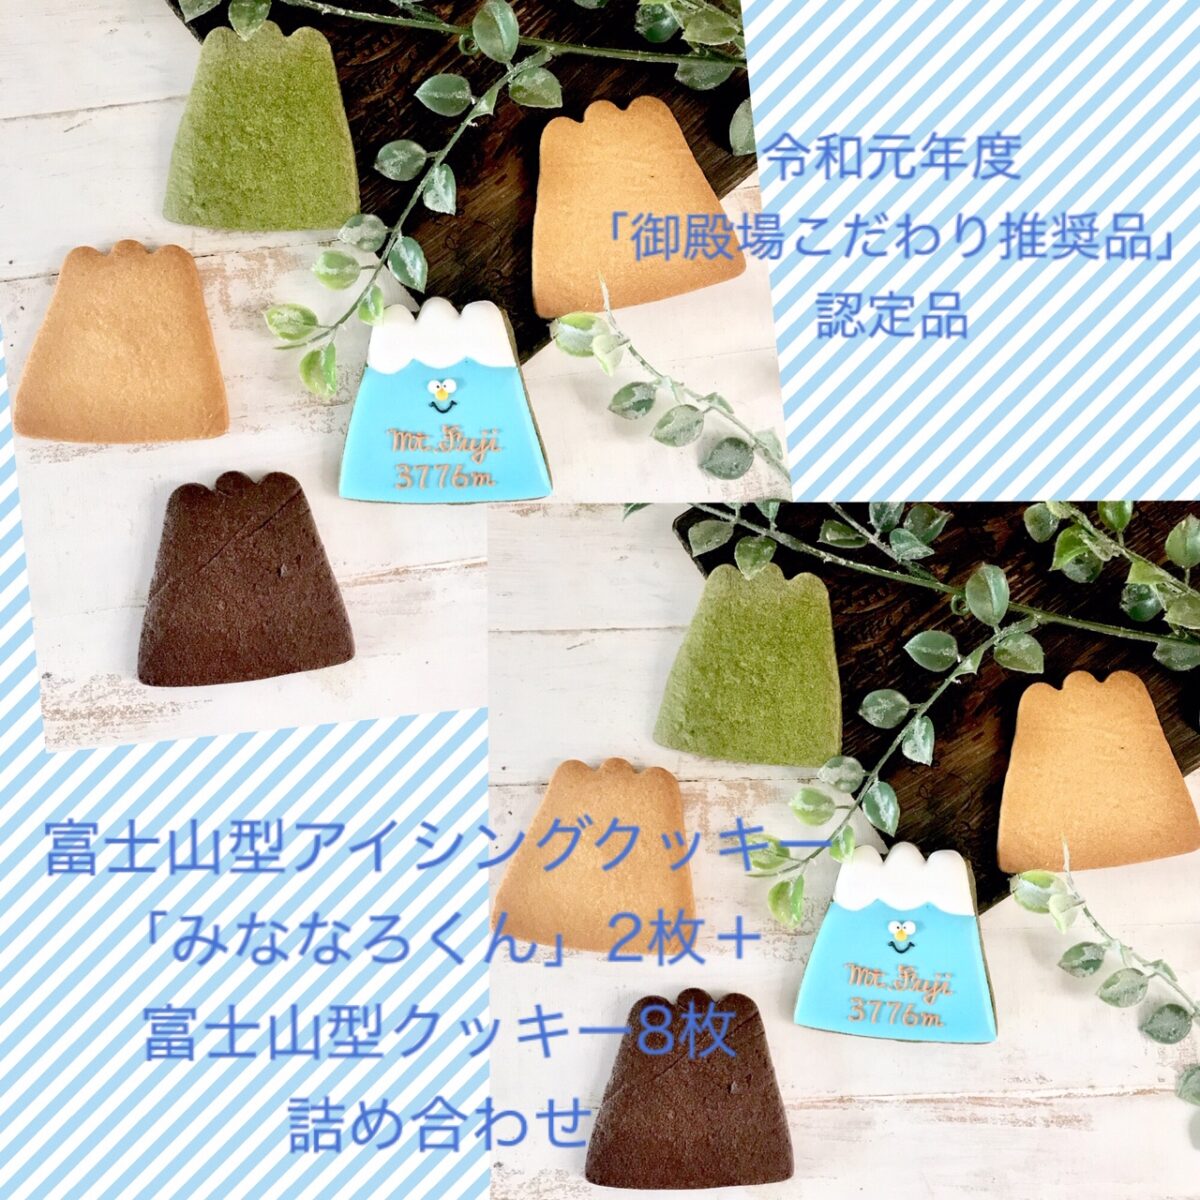 富士山型アイシングクッキー「みななろくん」・クッキー4種10枚詰め合わせの返納品画像イメージ